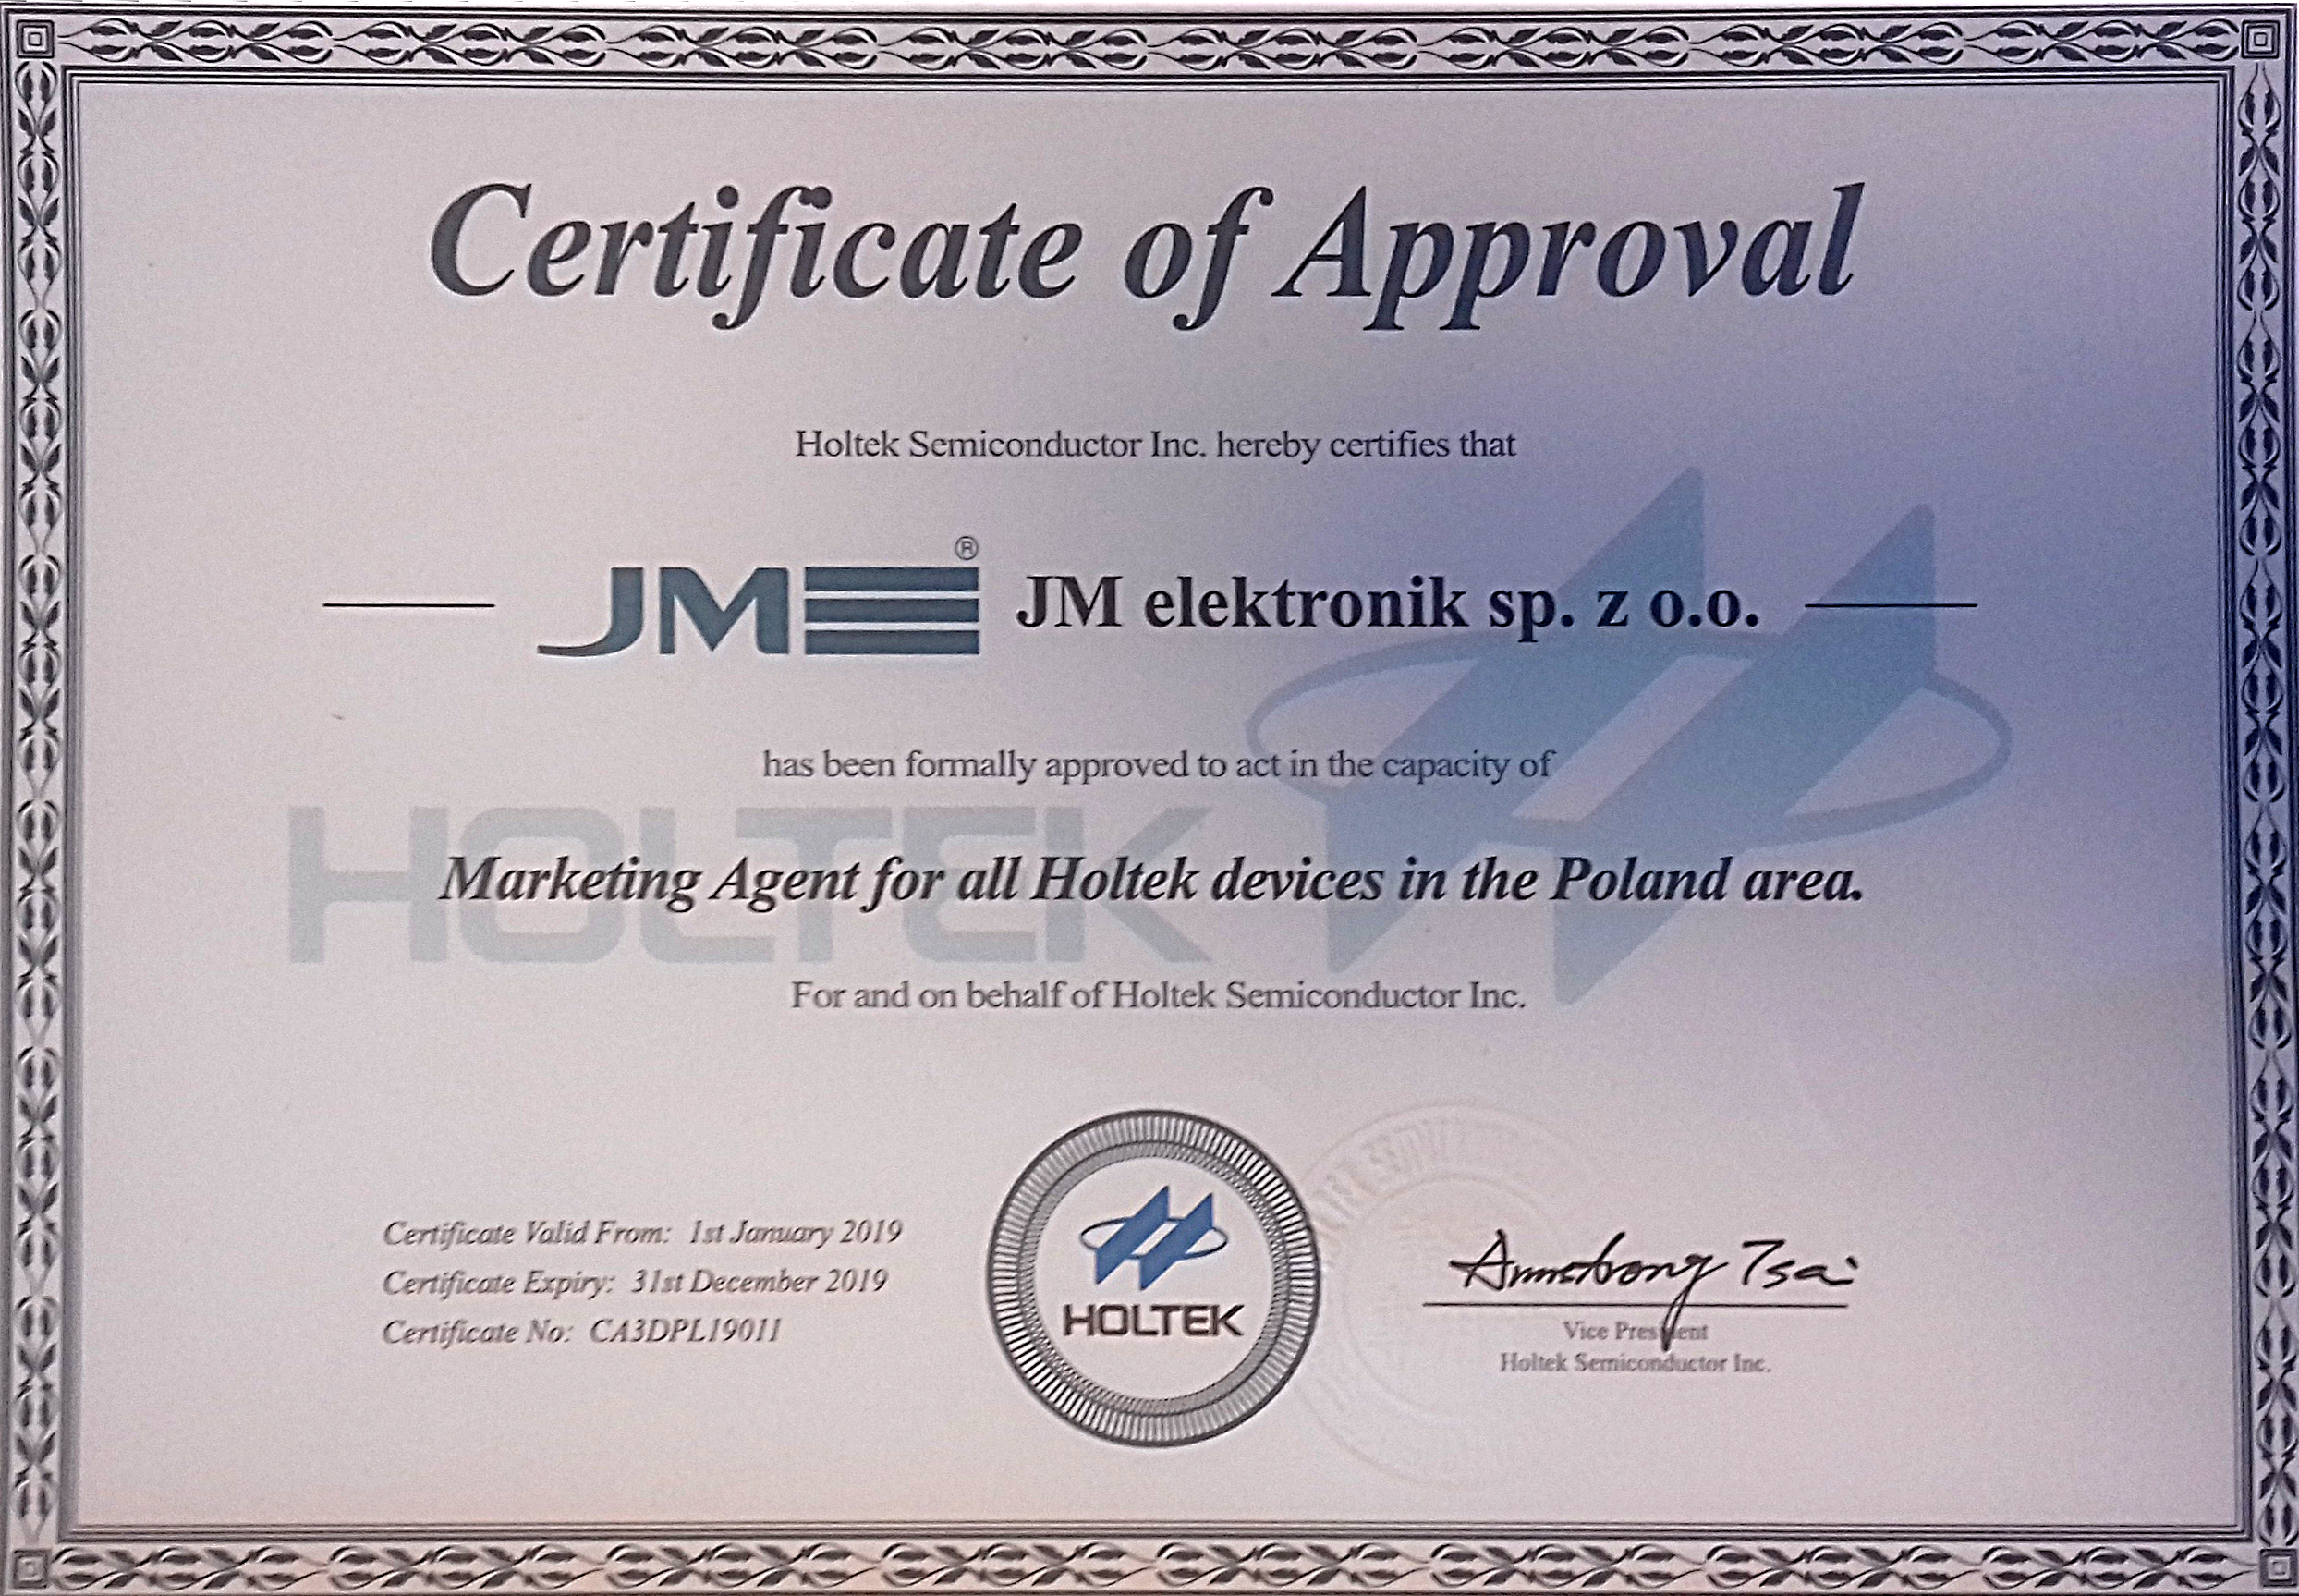 Certyfikat, Holtek, JM elektronik